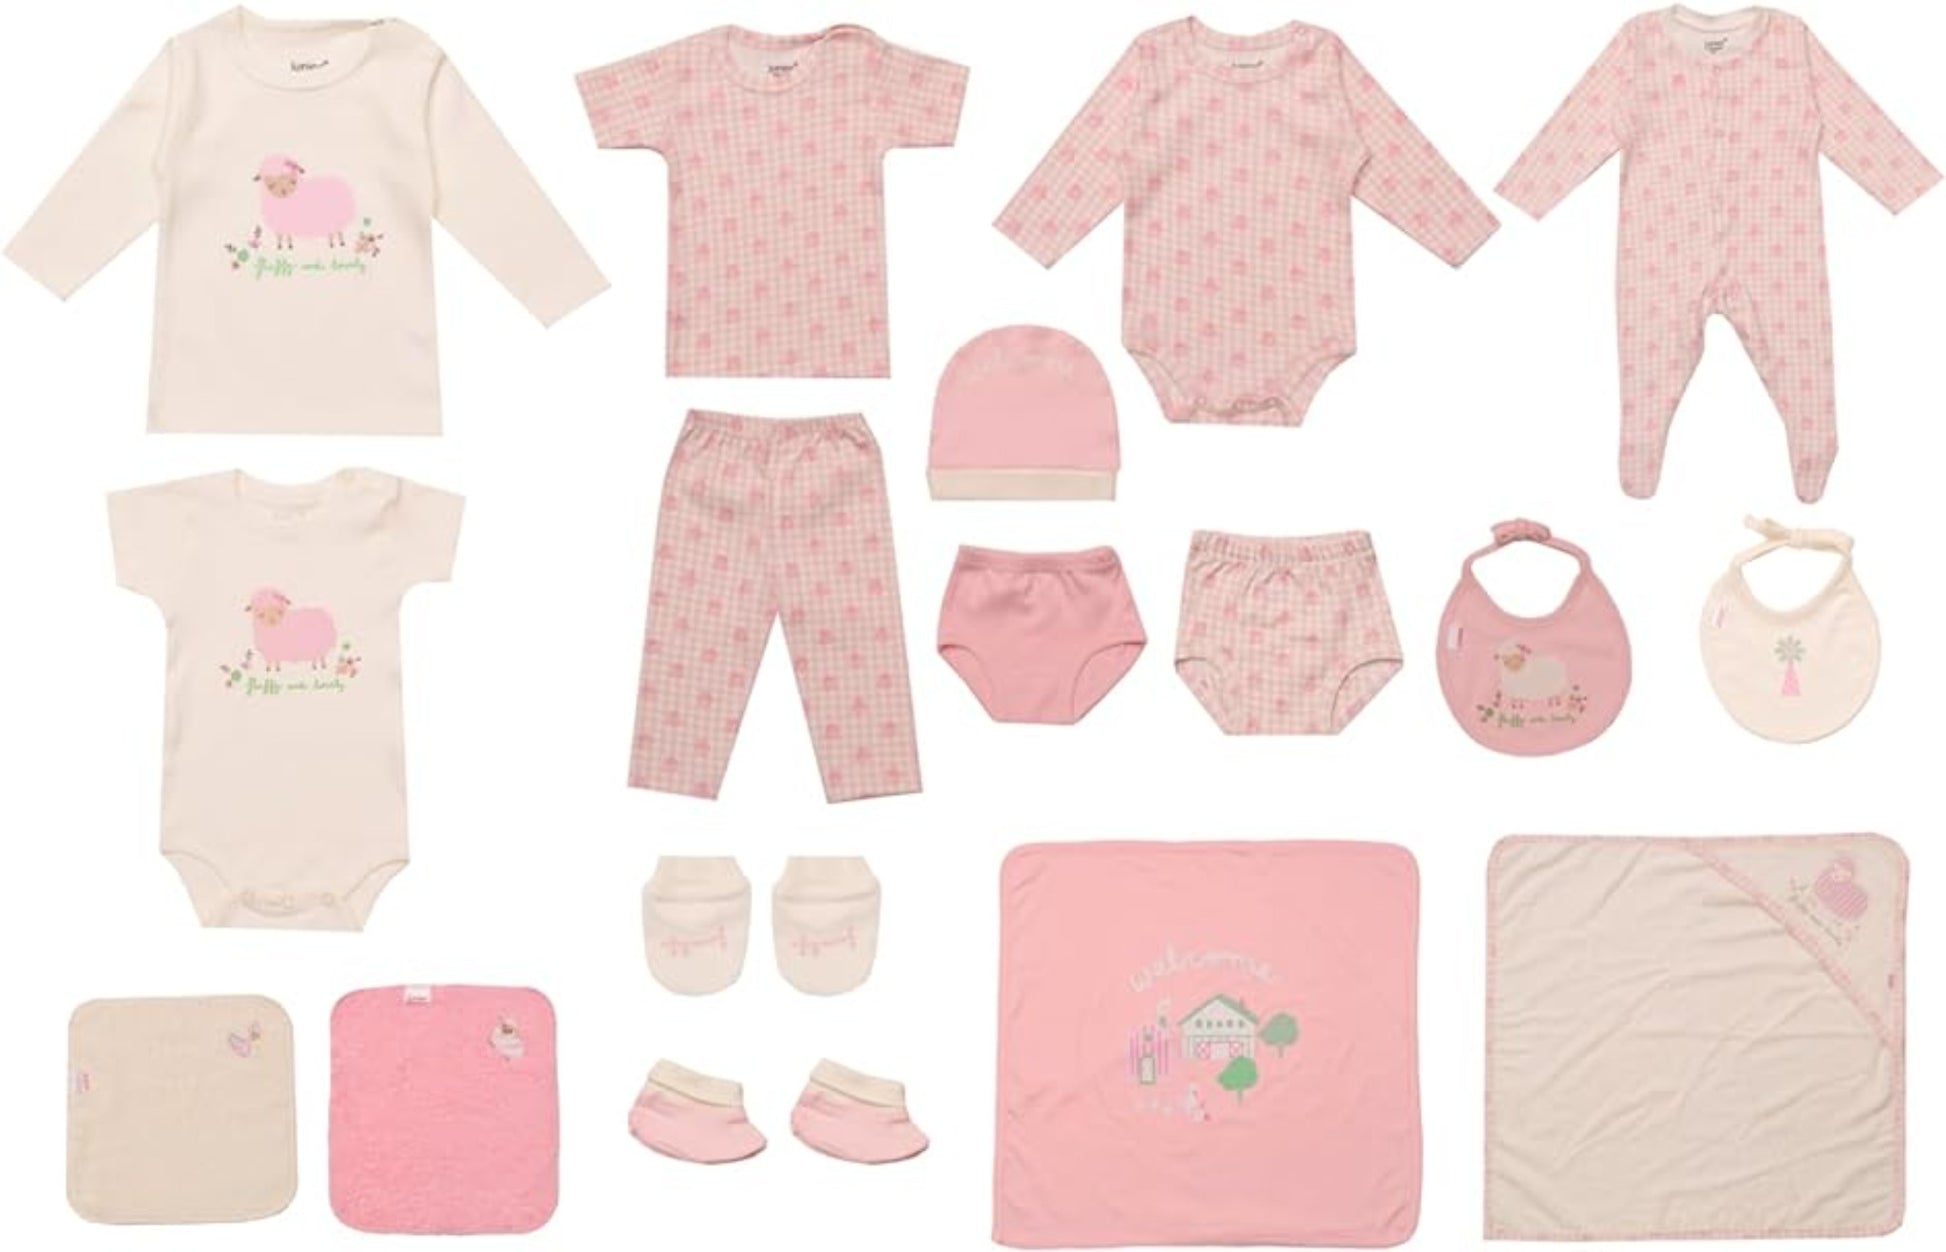 Junior Baby Fashion Gift set for newborn to 3 months 20 pieces اطقم الولادة من جونيور من سن يوم ل 3 شهور 20 قطعه